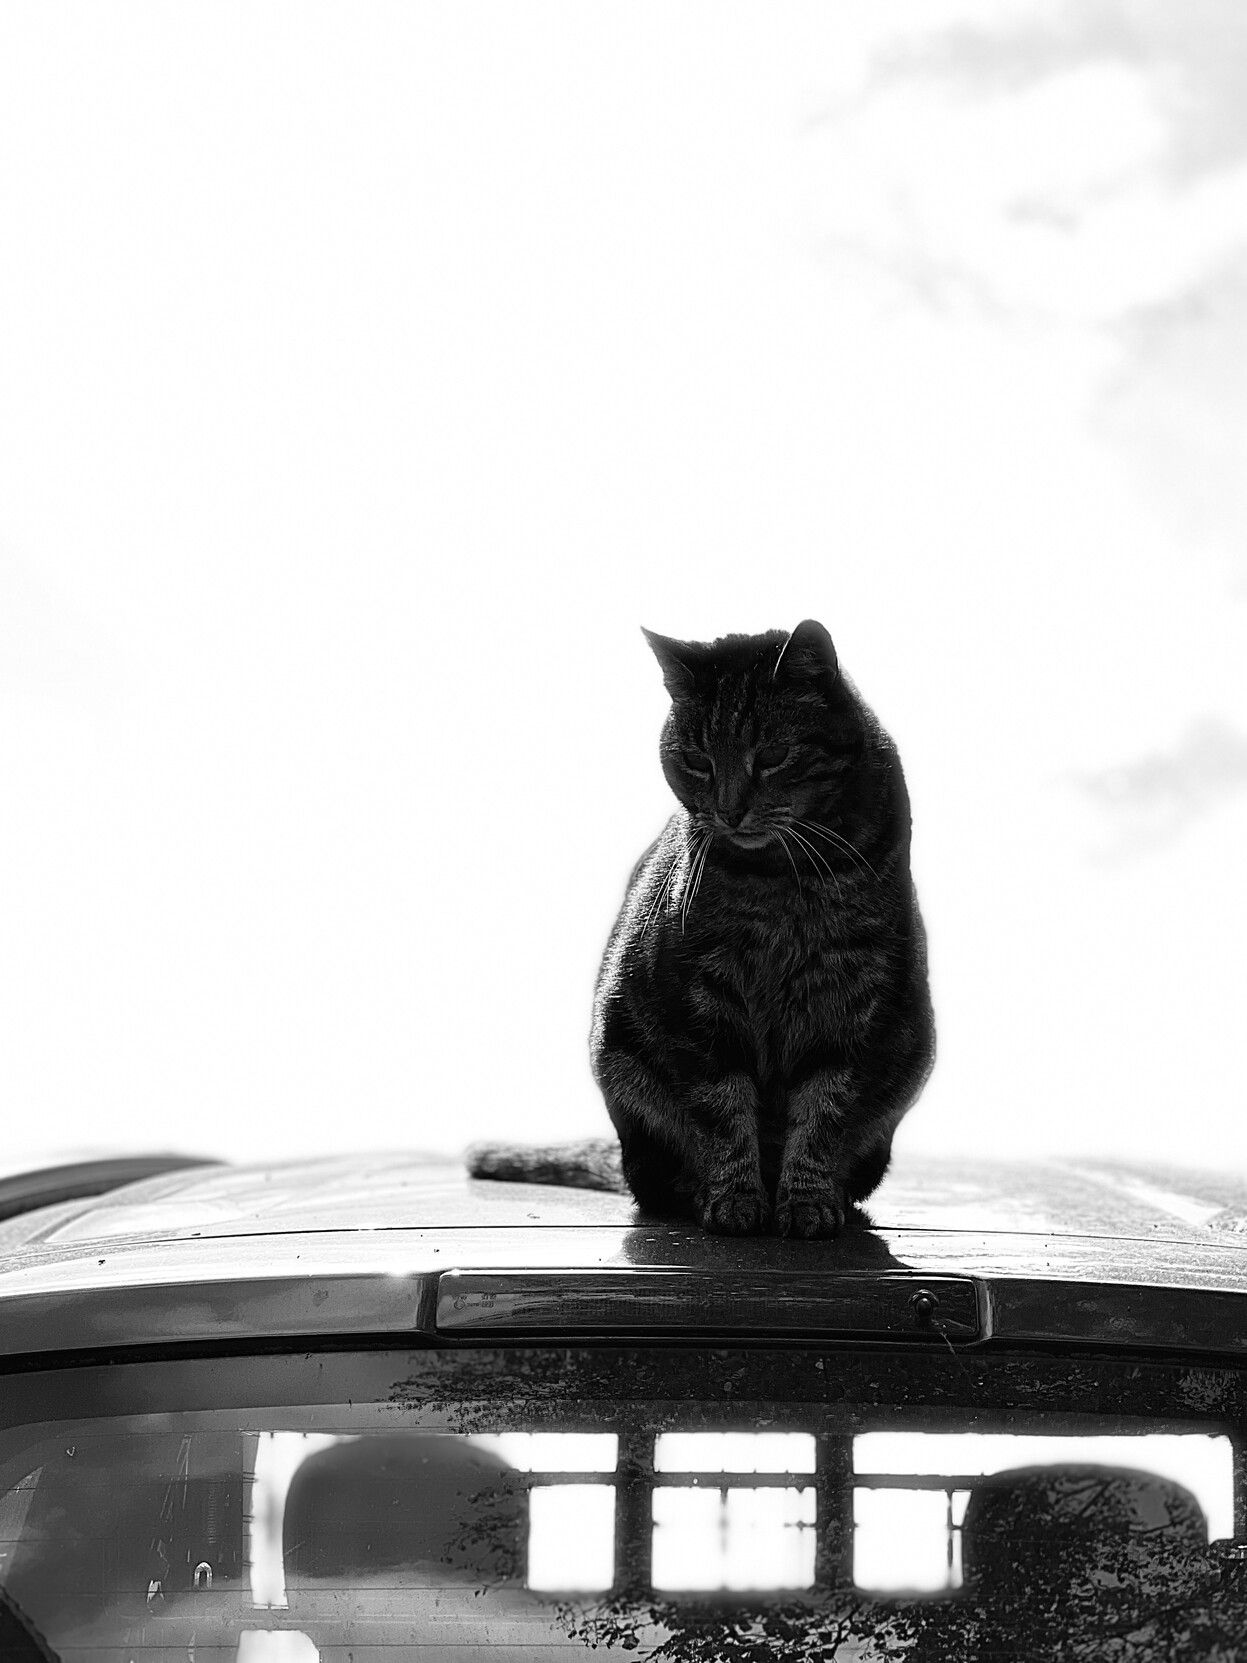 Schwarz-weiß: eine getigerte Katze sitzt auf einem Autodach. Der Hintergrund ist komplett weiß.